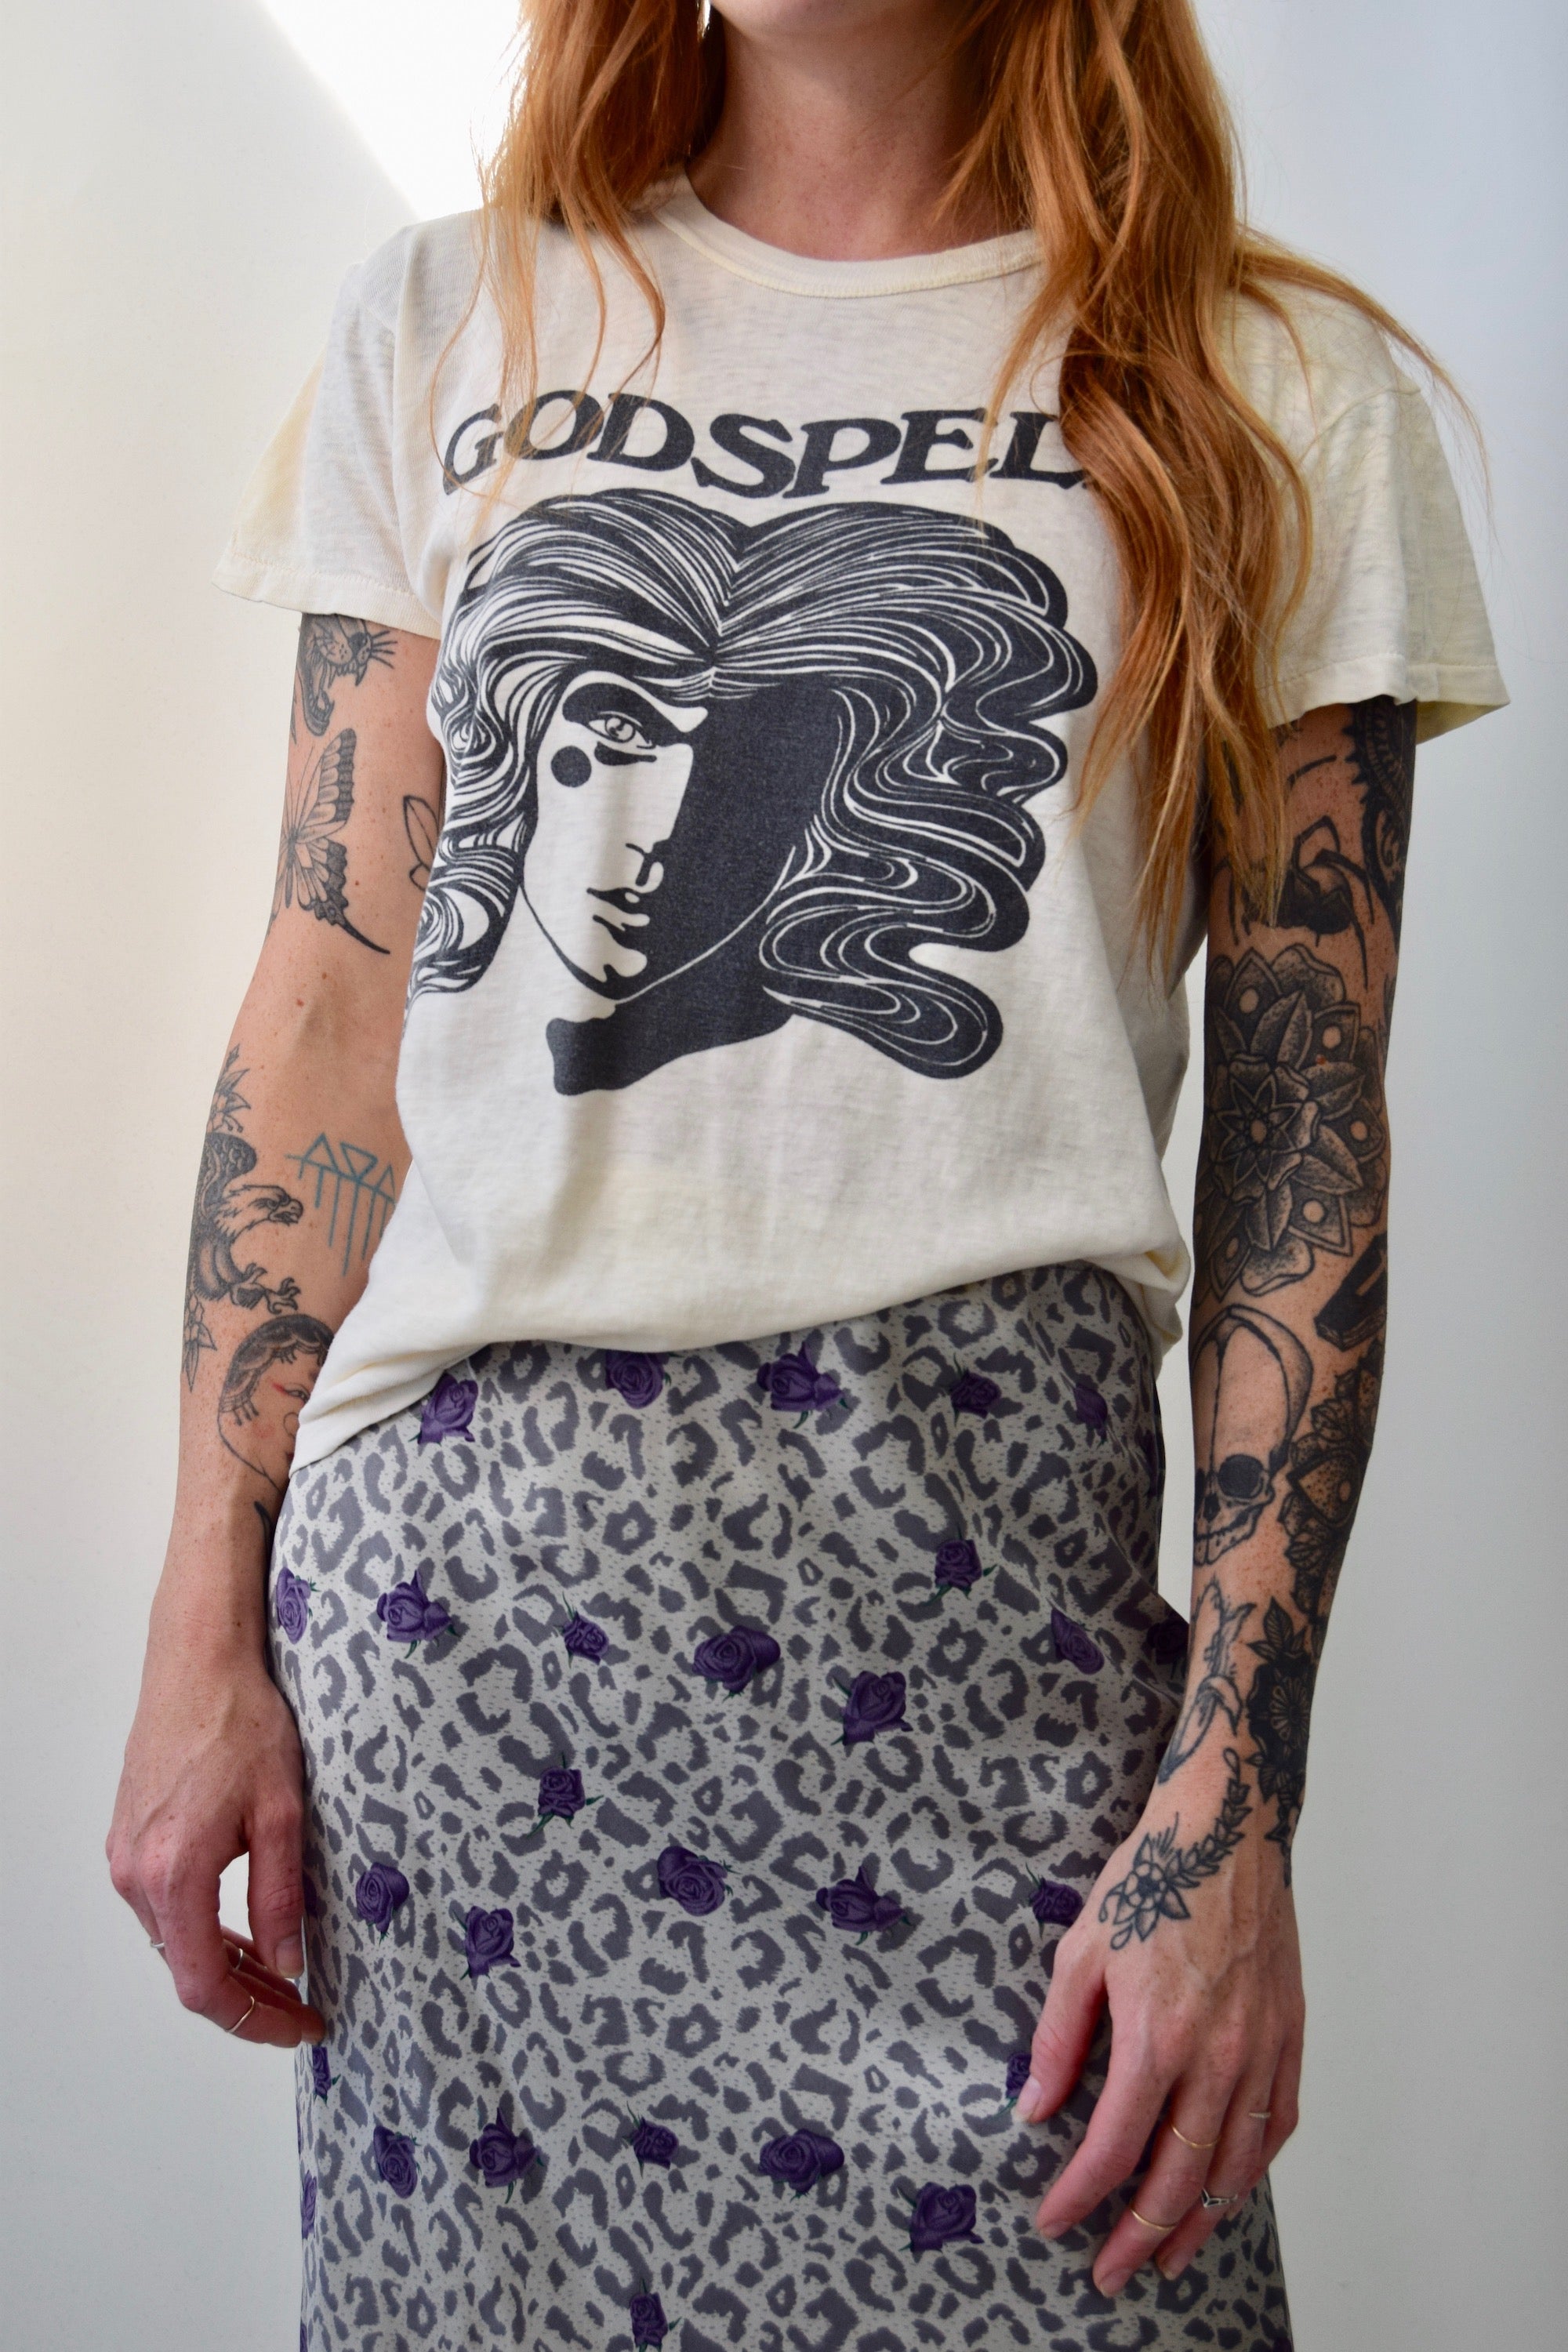 Seventies "Godspell" T-Shirt